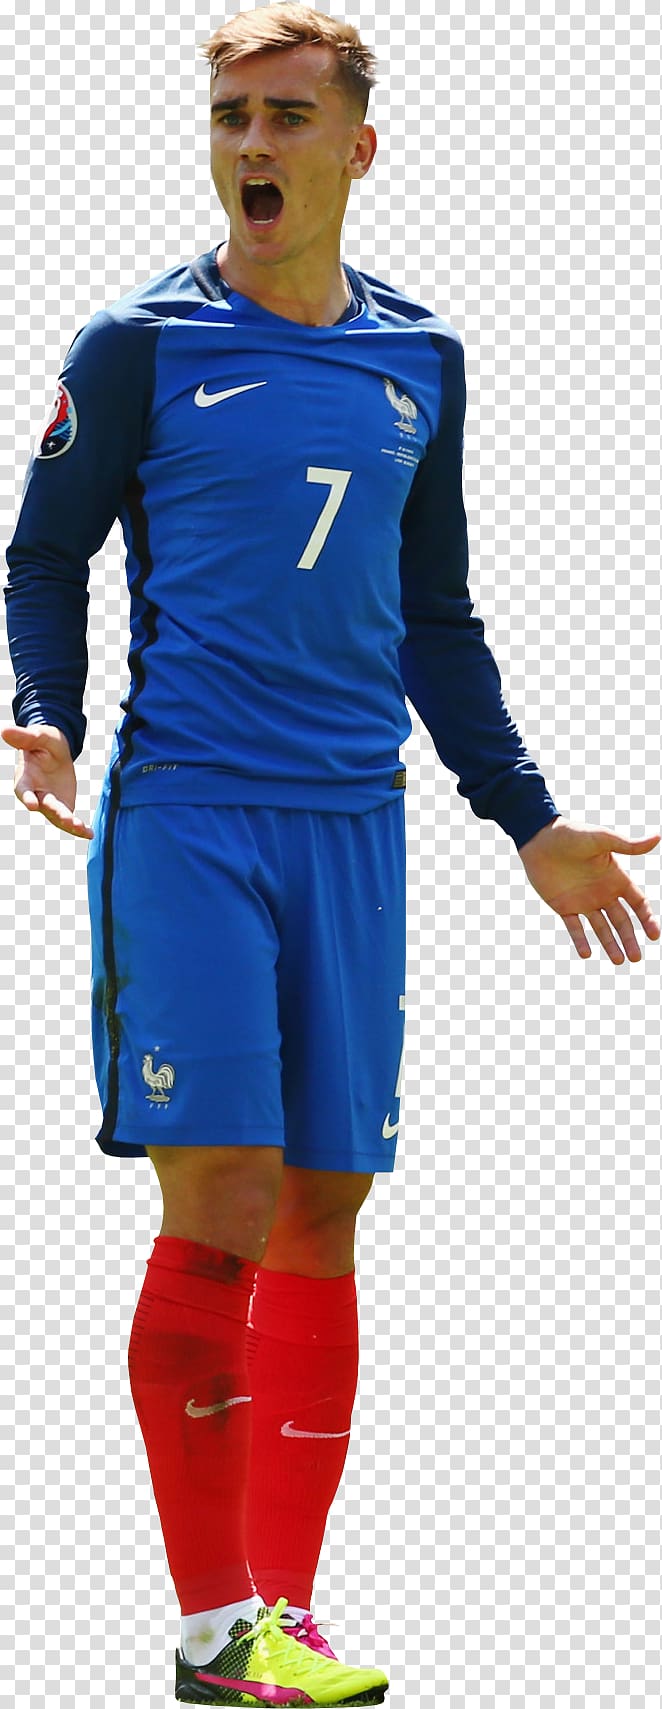 Team sport Football Outerwear Uniform, football transparent background PNG clipart